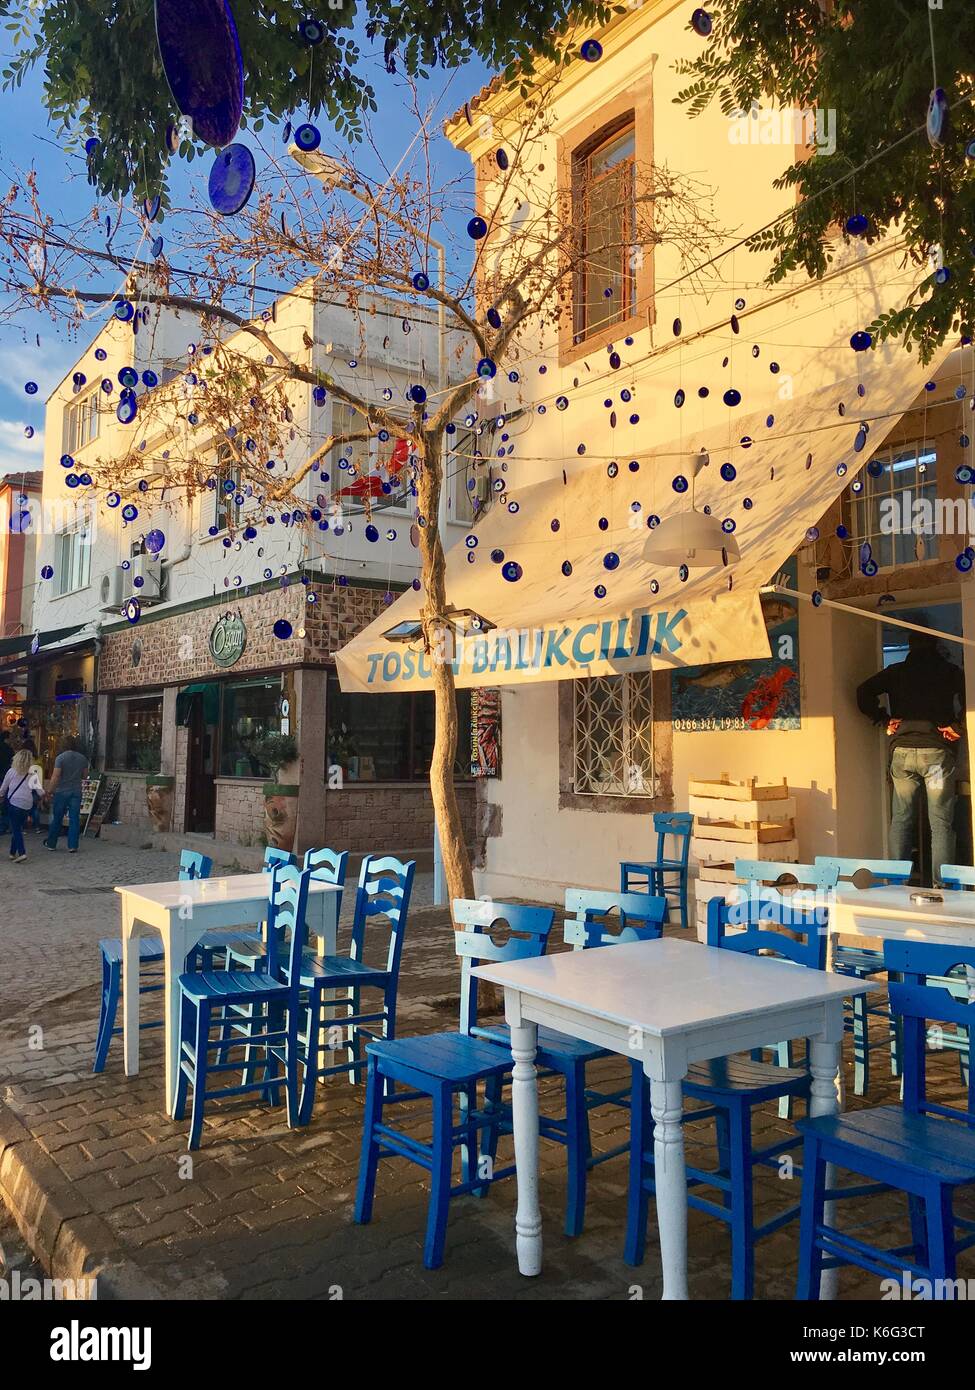 L'île de cunda, Turquie - 21 mai 2017 : un café en plein air de la ville touristique de l'île de cunda alibey, ayvalik. c'est une petite île dans le nord-ouest de la mer Égée Banque D'Images